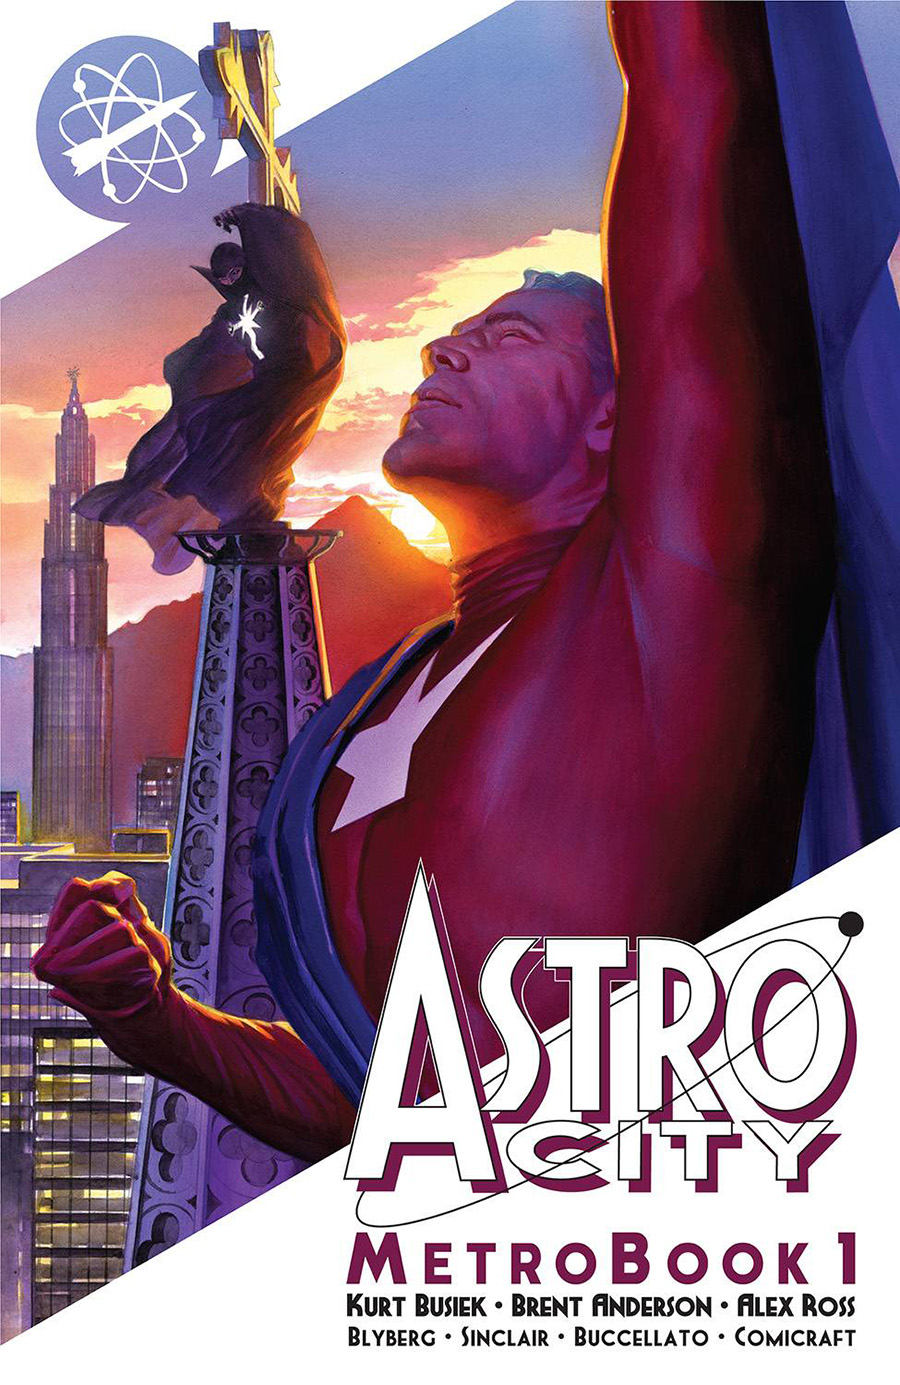 Astro City Metrobook Vol 1 TP